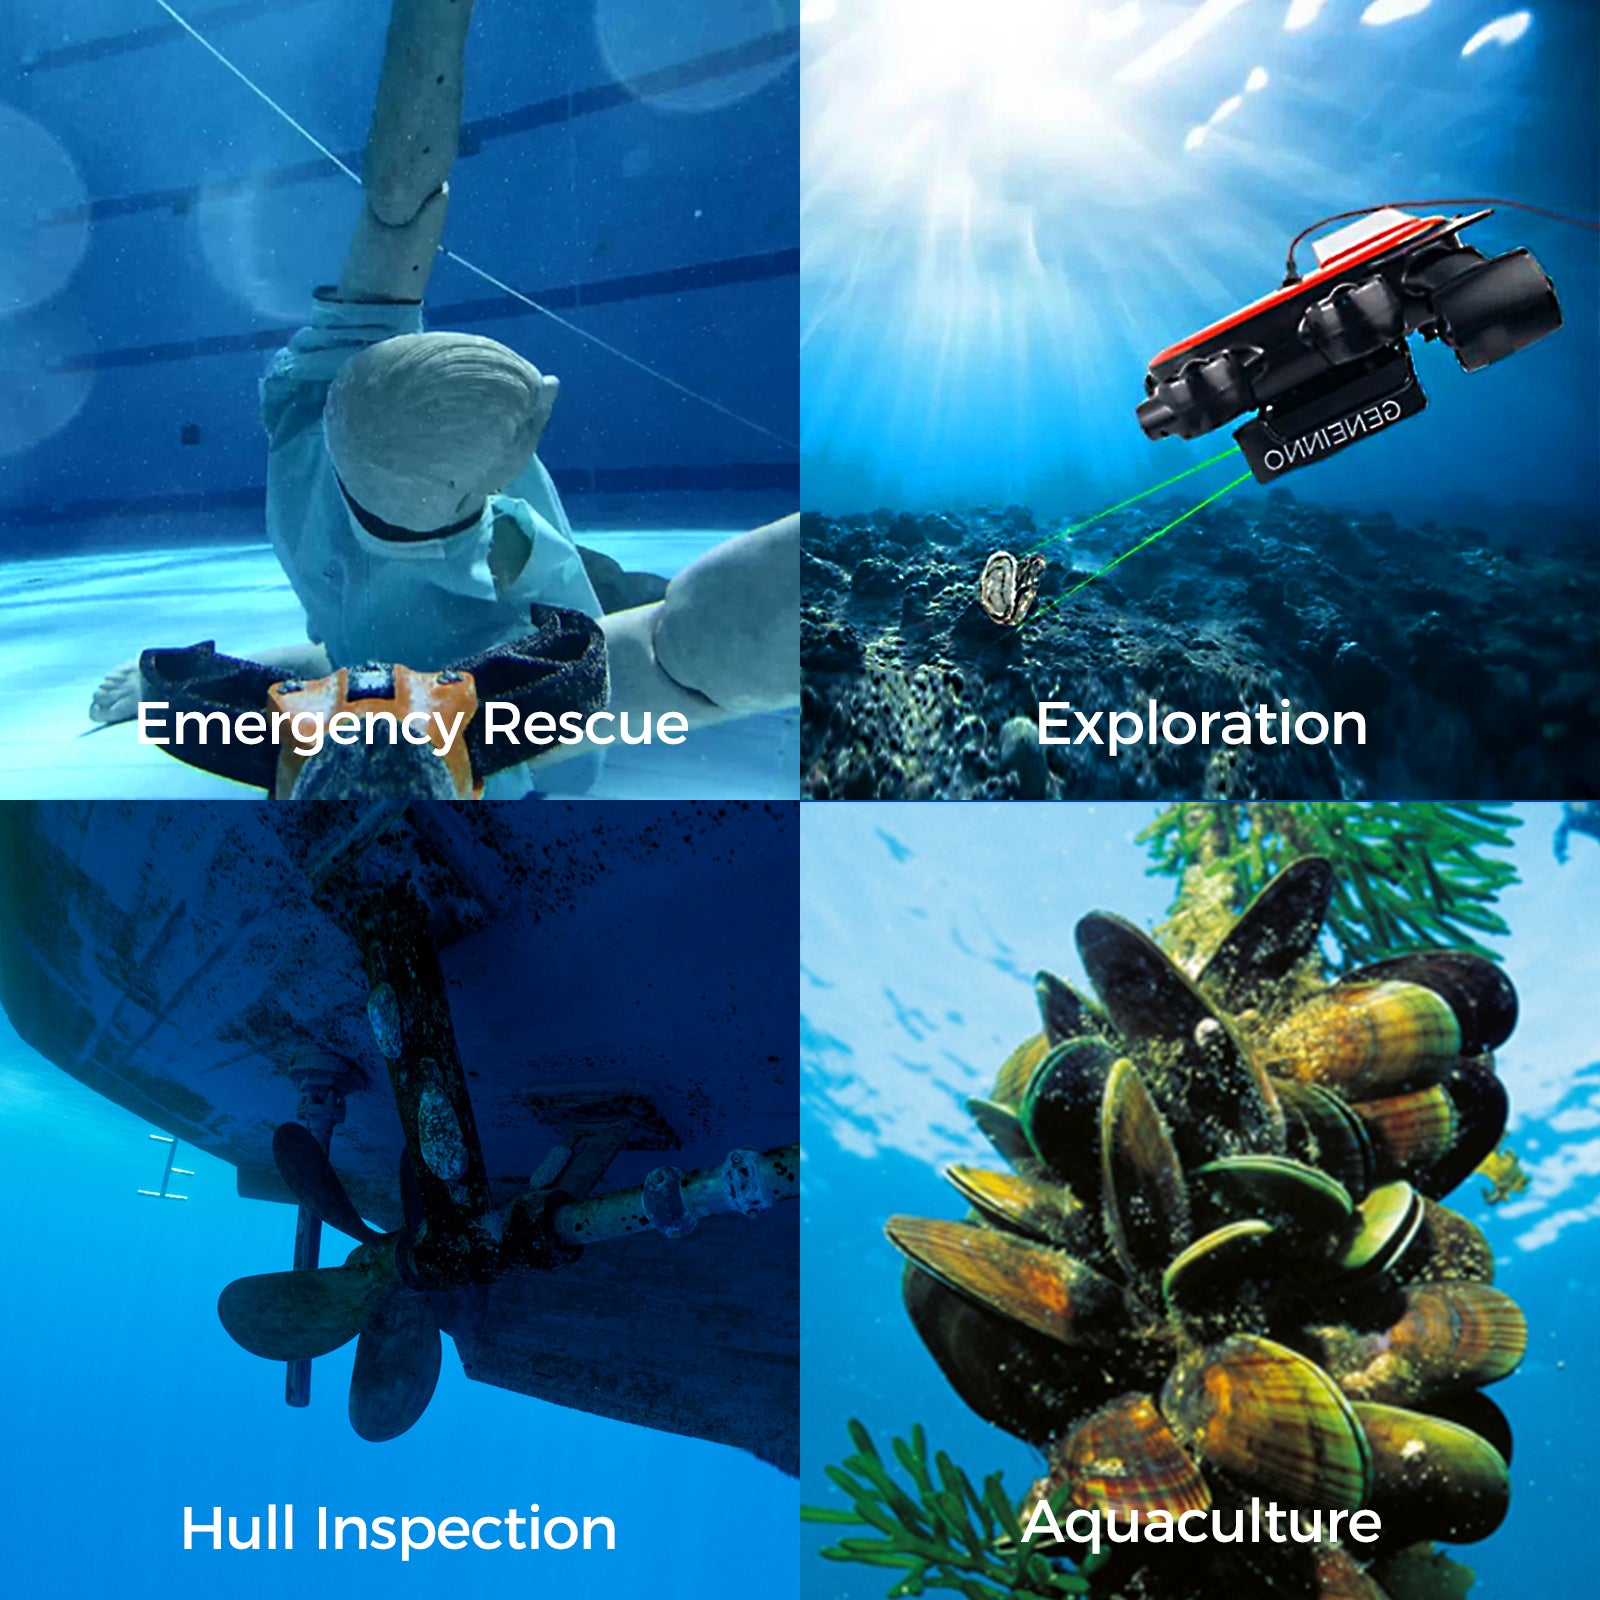 Geneinno T1 Pro Underwater Drone